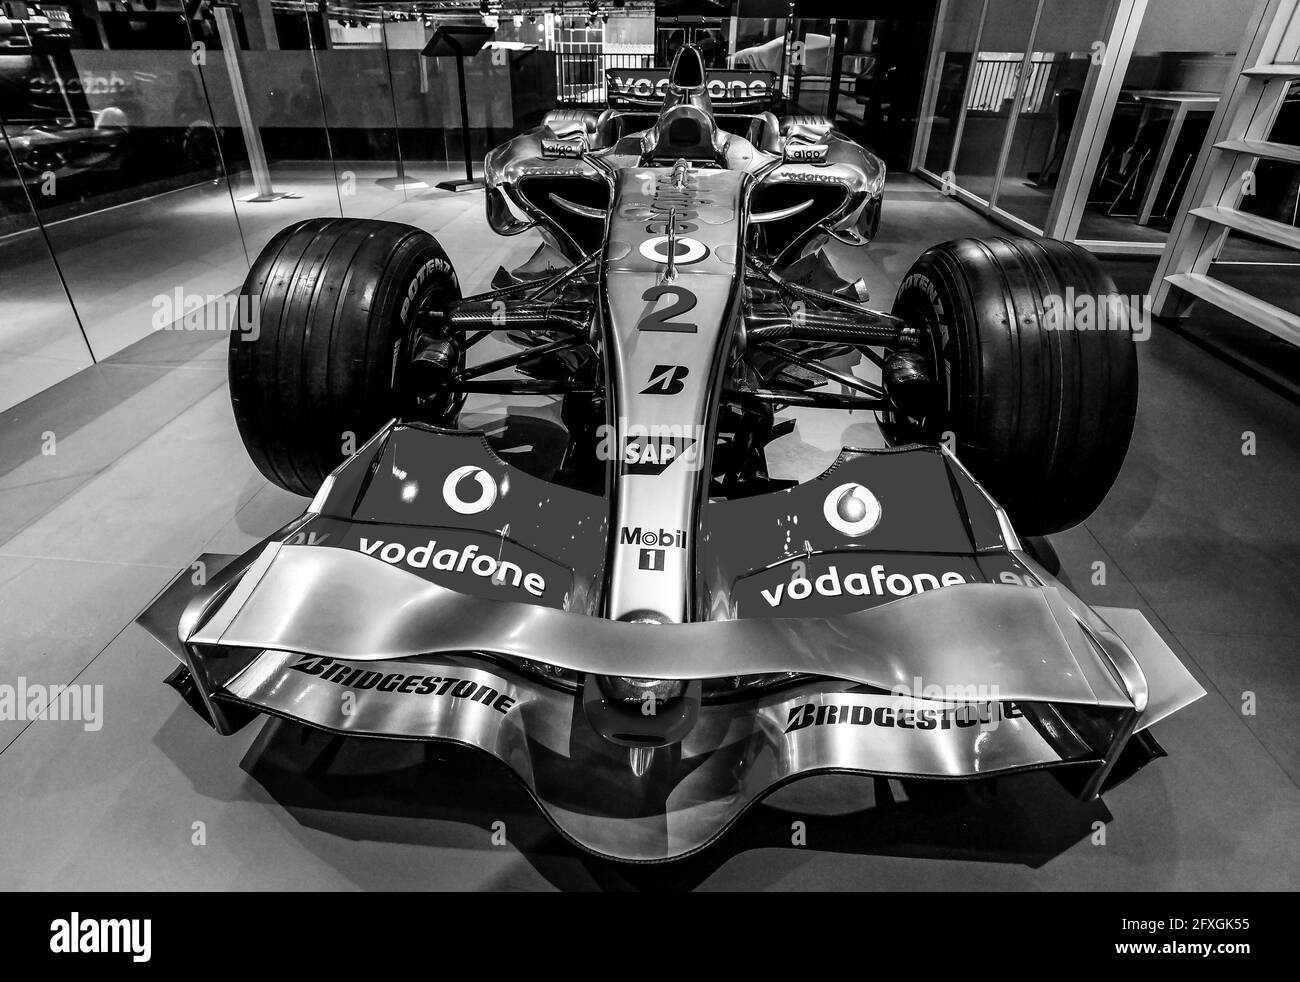 JOHANNESBURG, AFRIQUE DU SUD - 06 janvier 2021: Johannesburg, Afrique du Sud - octobre 06 2011: McLaren Formula One Racing car exposé Banque D'Images